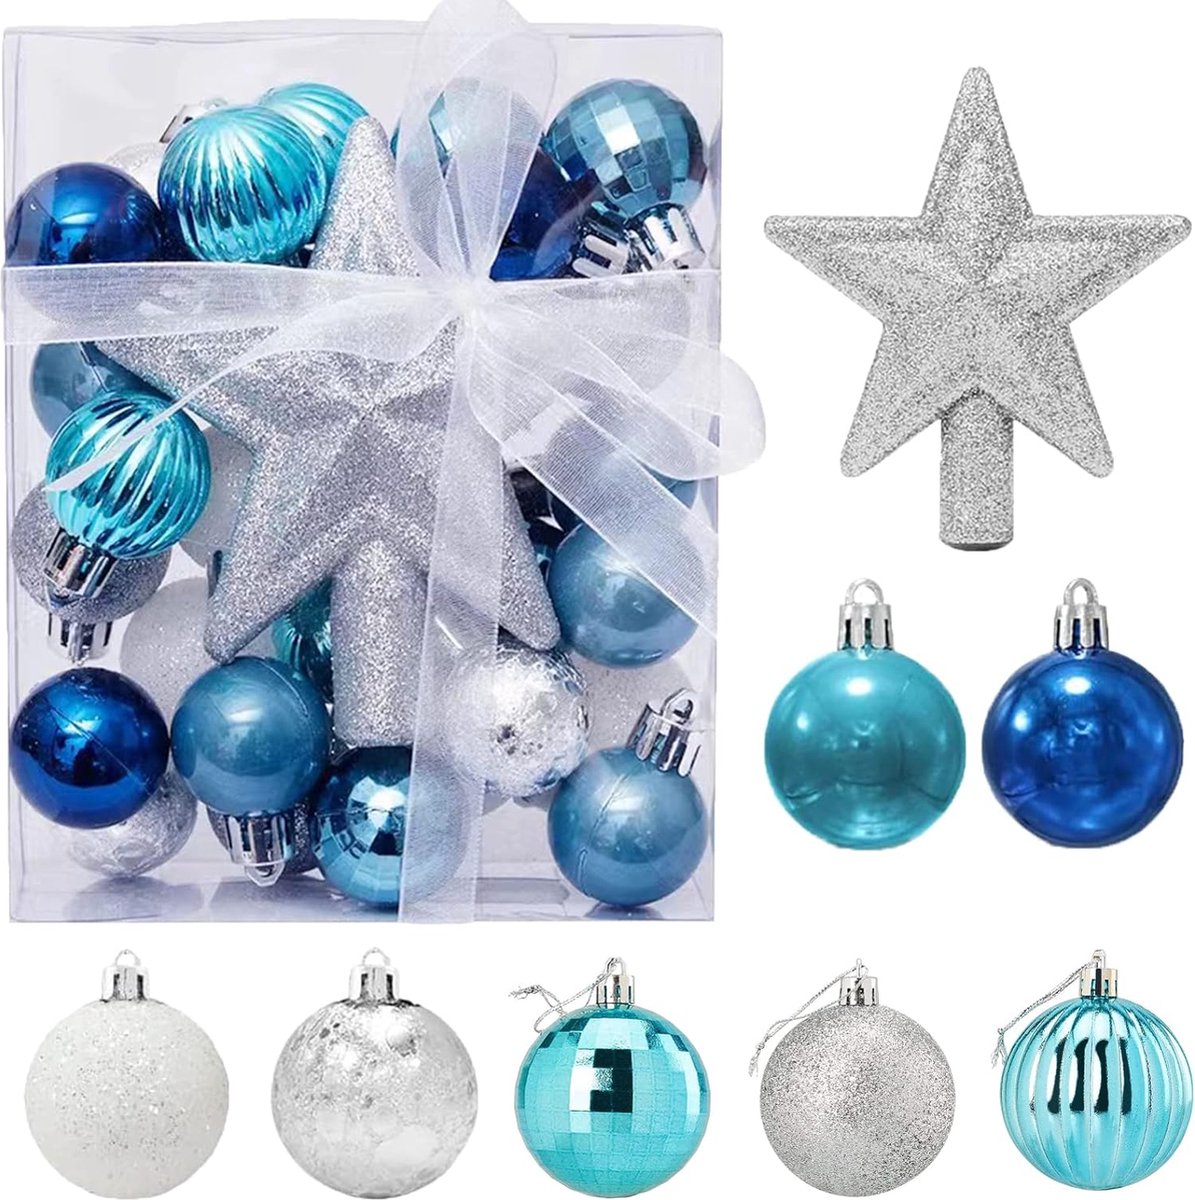 Fuleadture Kerstballen - Kerstversiering - Kerstboomdecoratie - Kerstballen Plastic - 30 Stuks - 3 cm